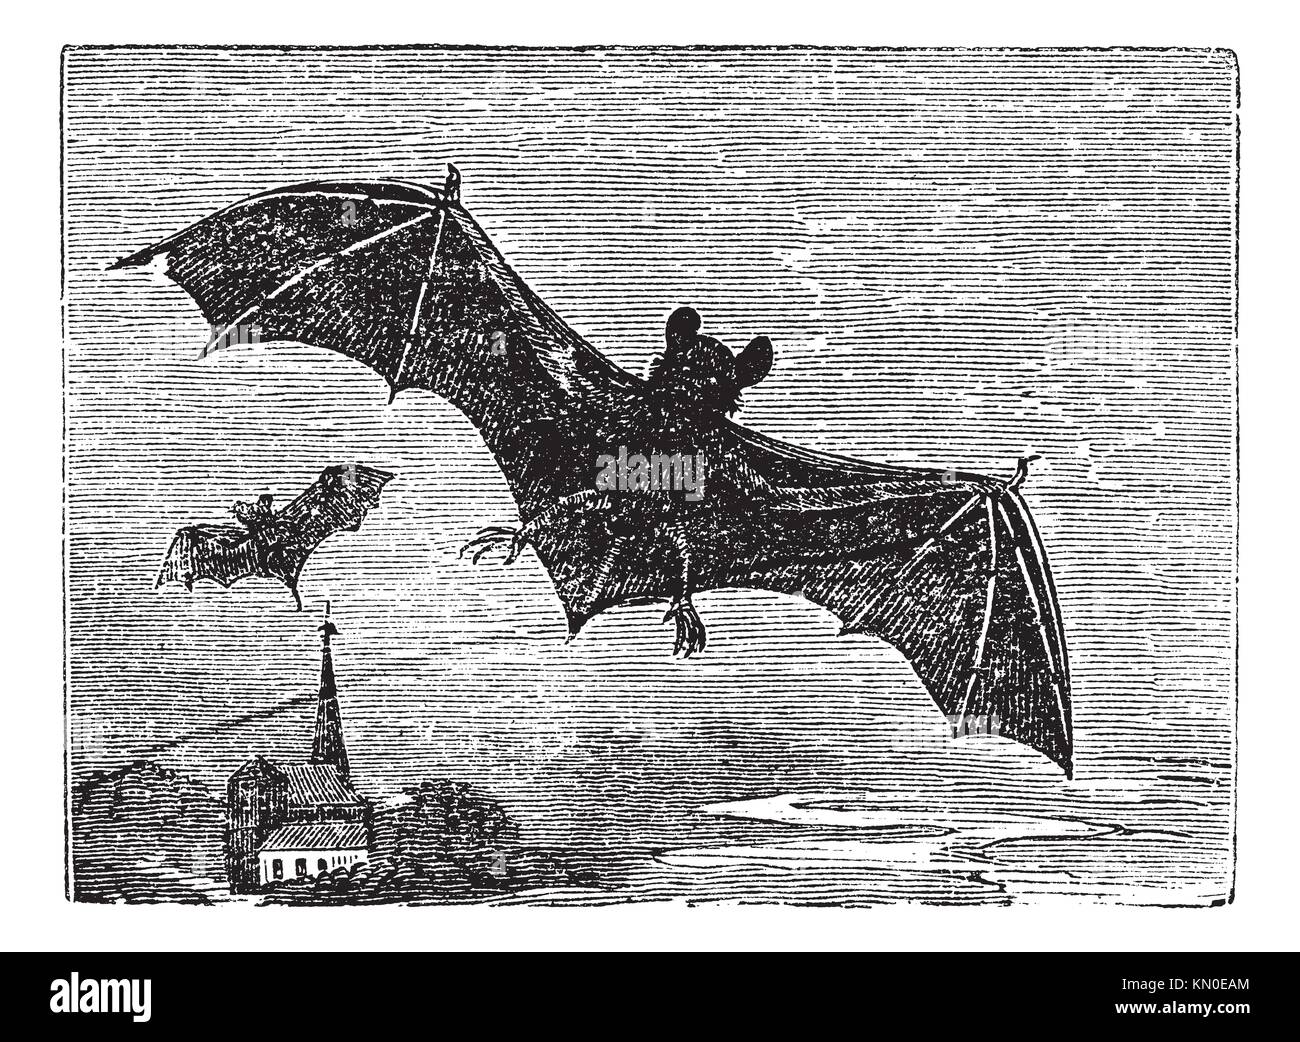 Common Bat or Vesper Bat or Evening Bat or Vespertilionidae, vintage engraving  Old engraved illustration of a Vesper Bat in flight Stock Photo